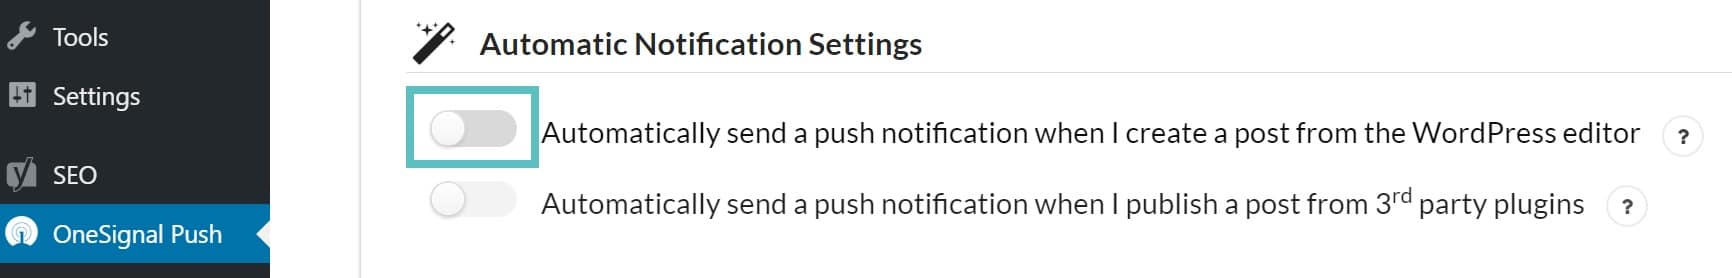 Desabilitar notificações push automáticas